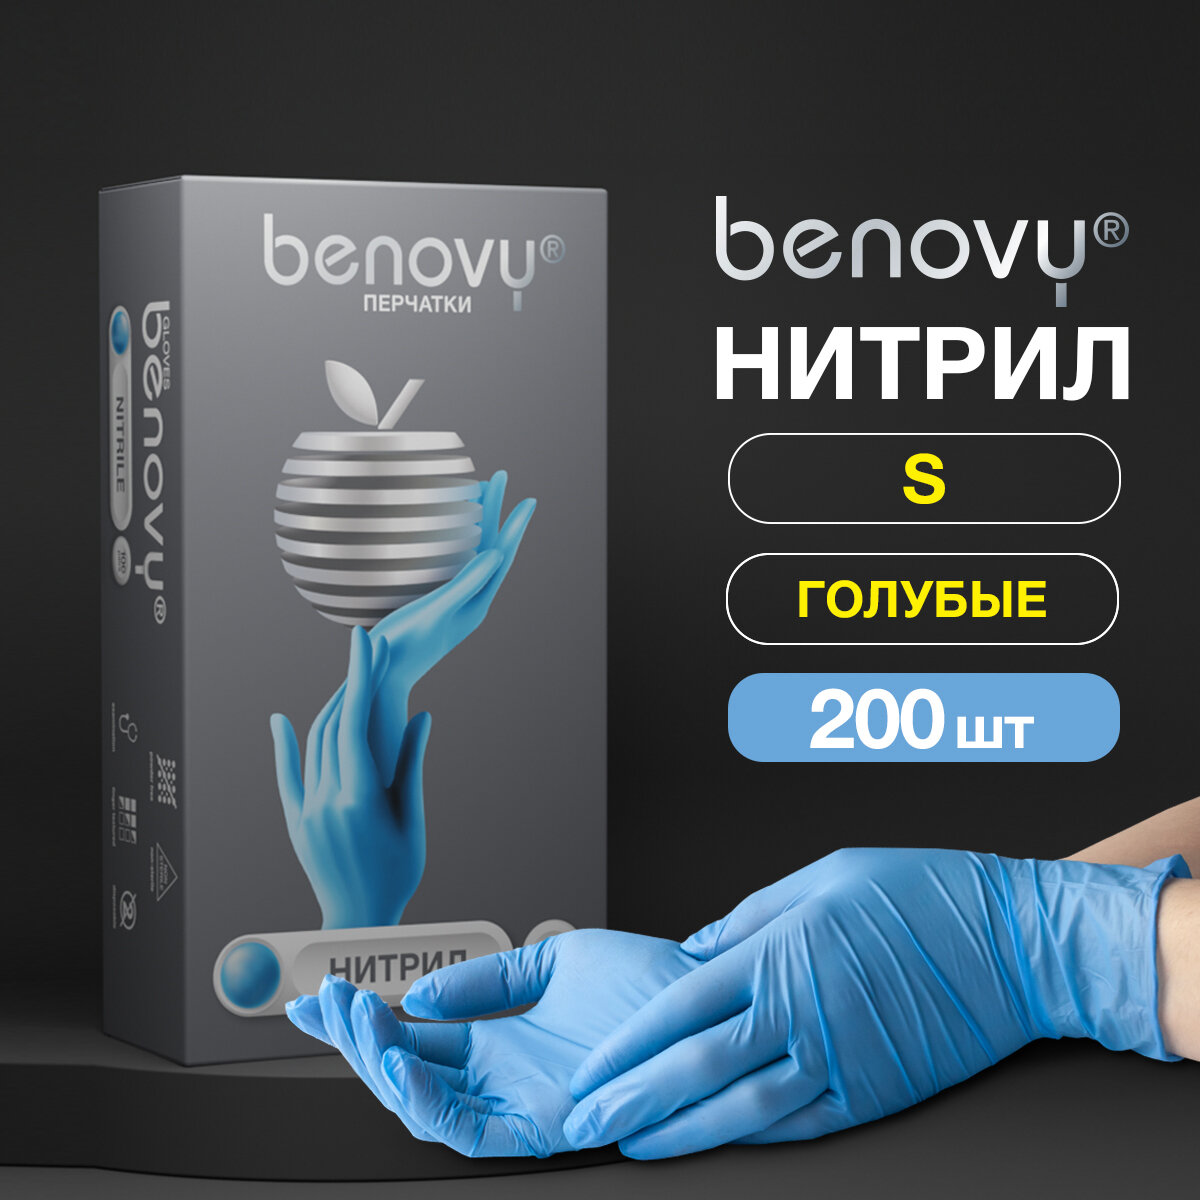 Перчатки смотровые Benovy Nitrile Chlorinated текстурированные на пальцах, 100 пар, размер: S, цвет: голубой, 1 уп.